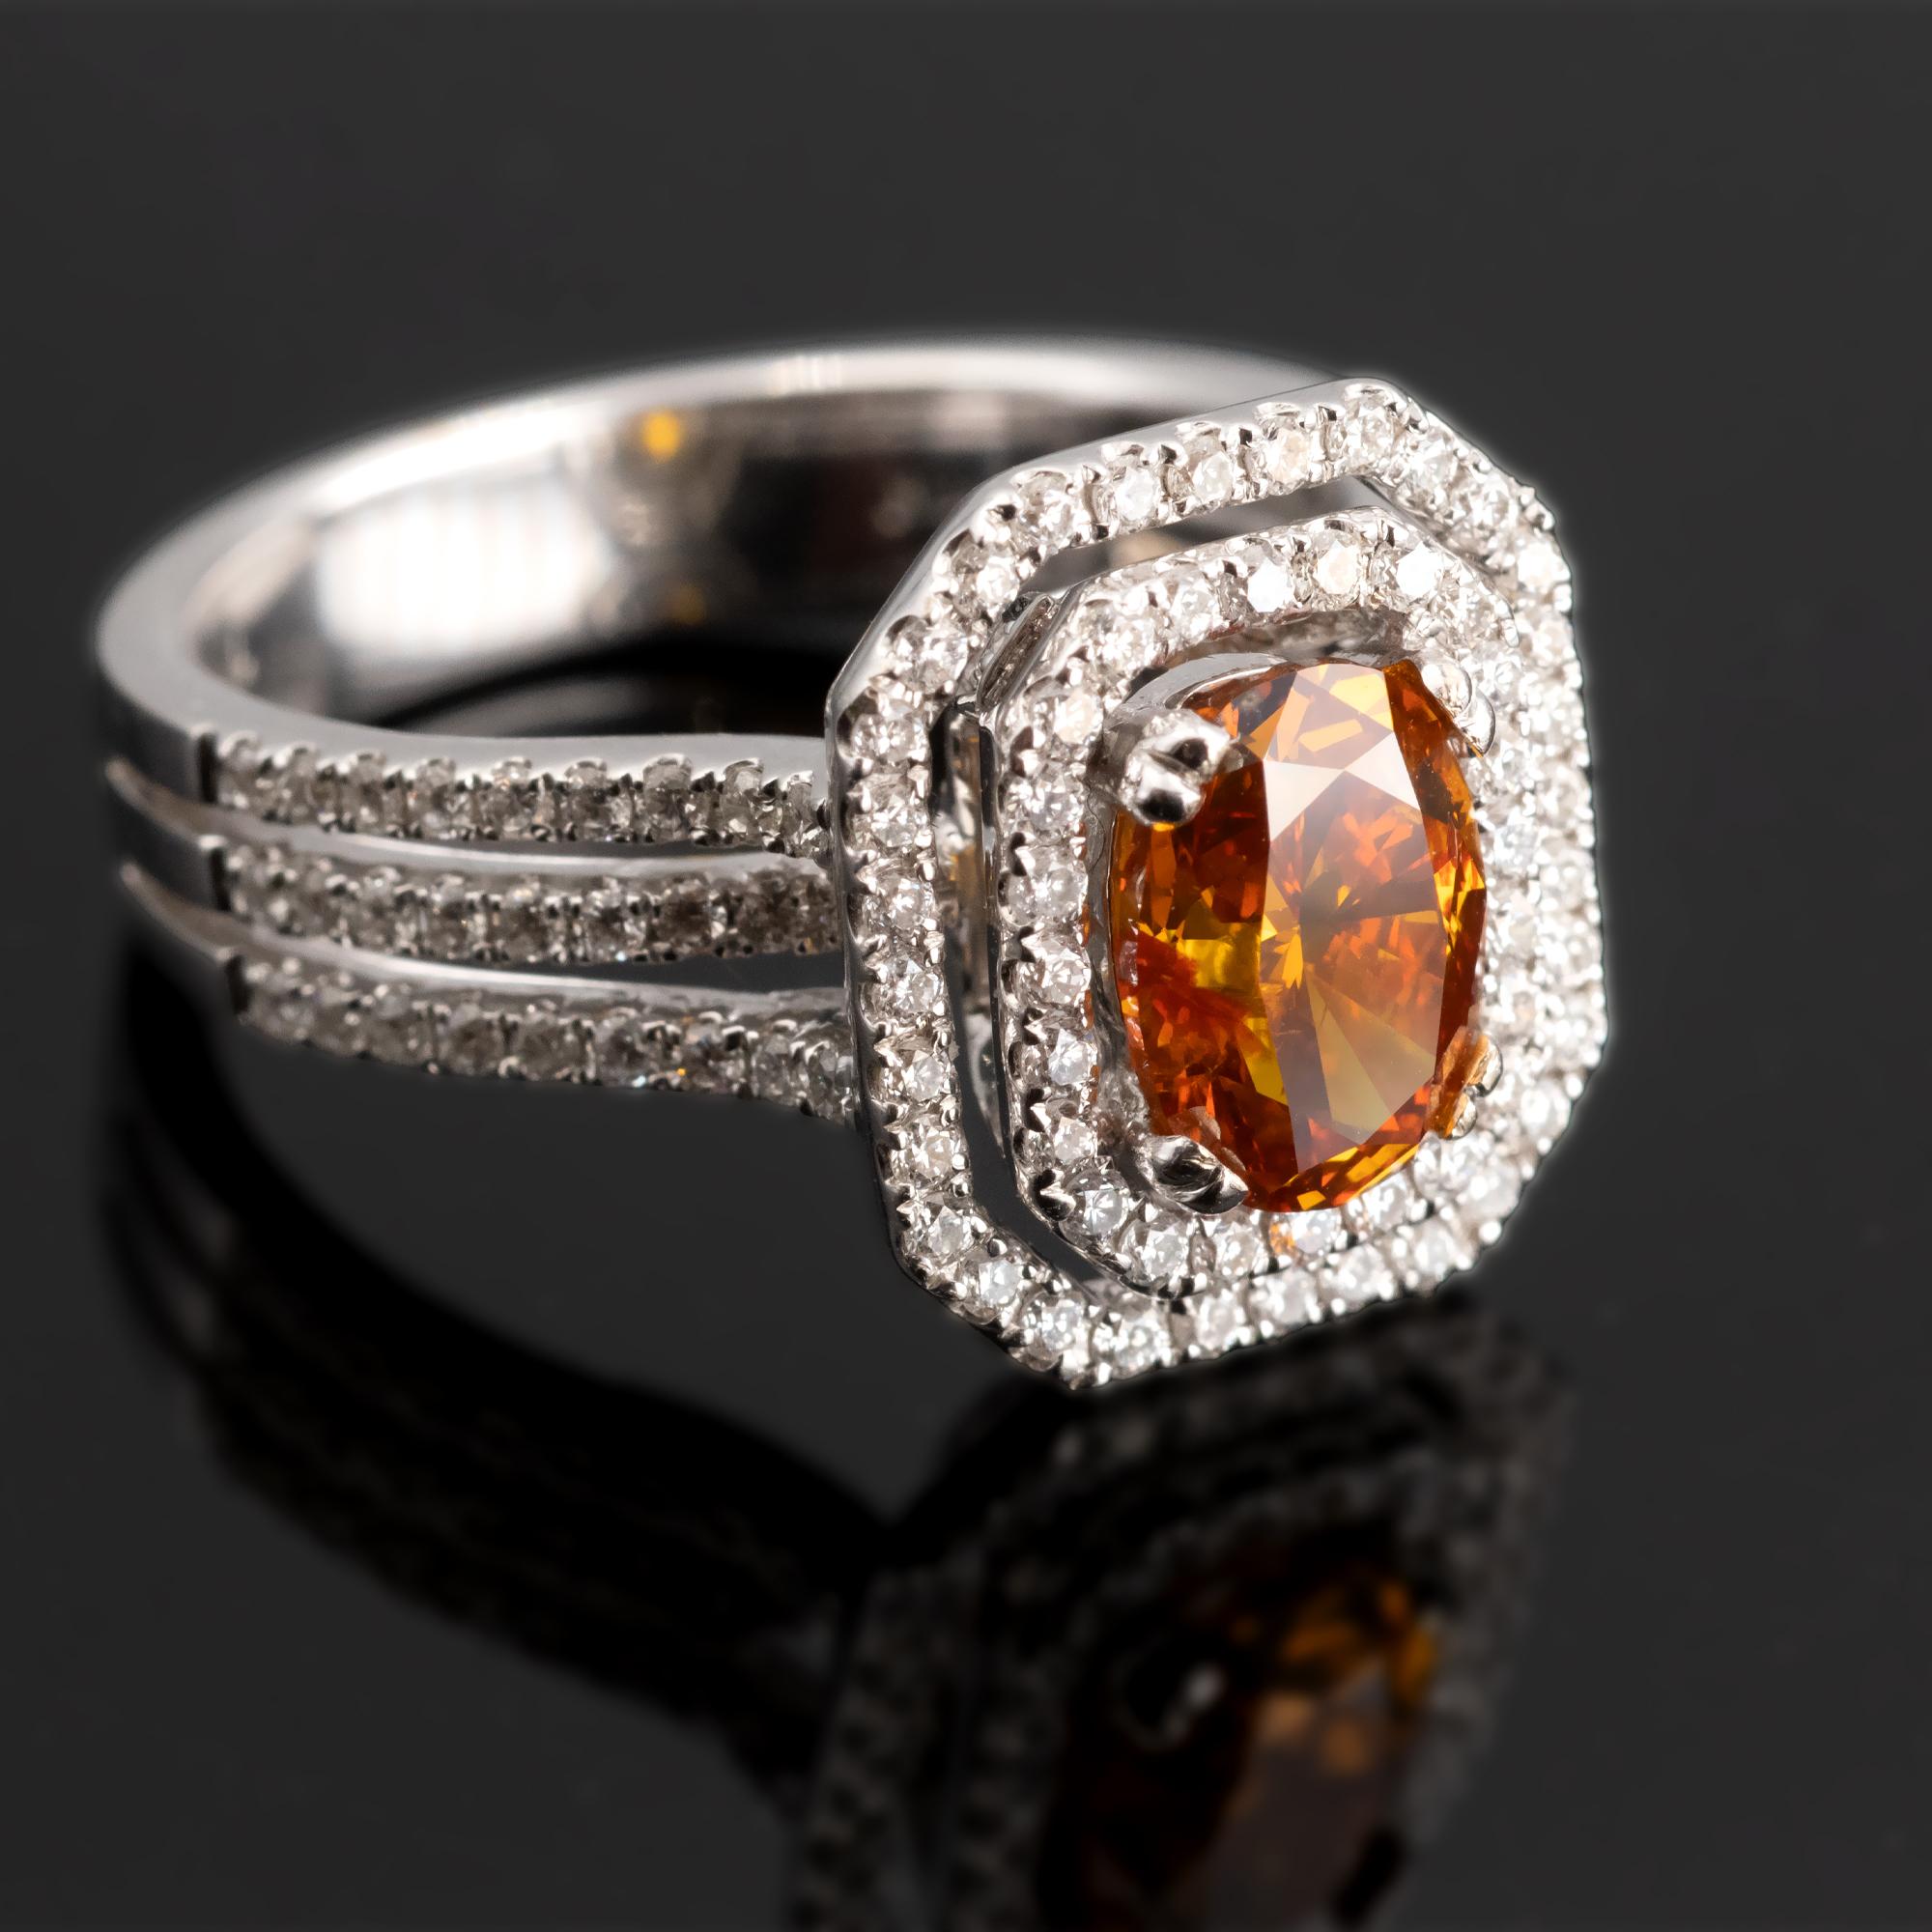 Ein natürlicher Fancy-Vivid-Diamant in Gelborange mit einem Gewicht von 1,34 Karat (HRD-zertifiziert), eingefasst in einen Ring mit doppeltem Halo aus Weißgold und 0,70 Karat weißen Diamanten.

Ring Größe 6½ (US) - 53 (EU)
